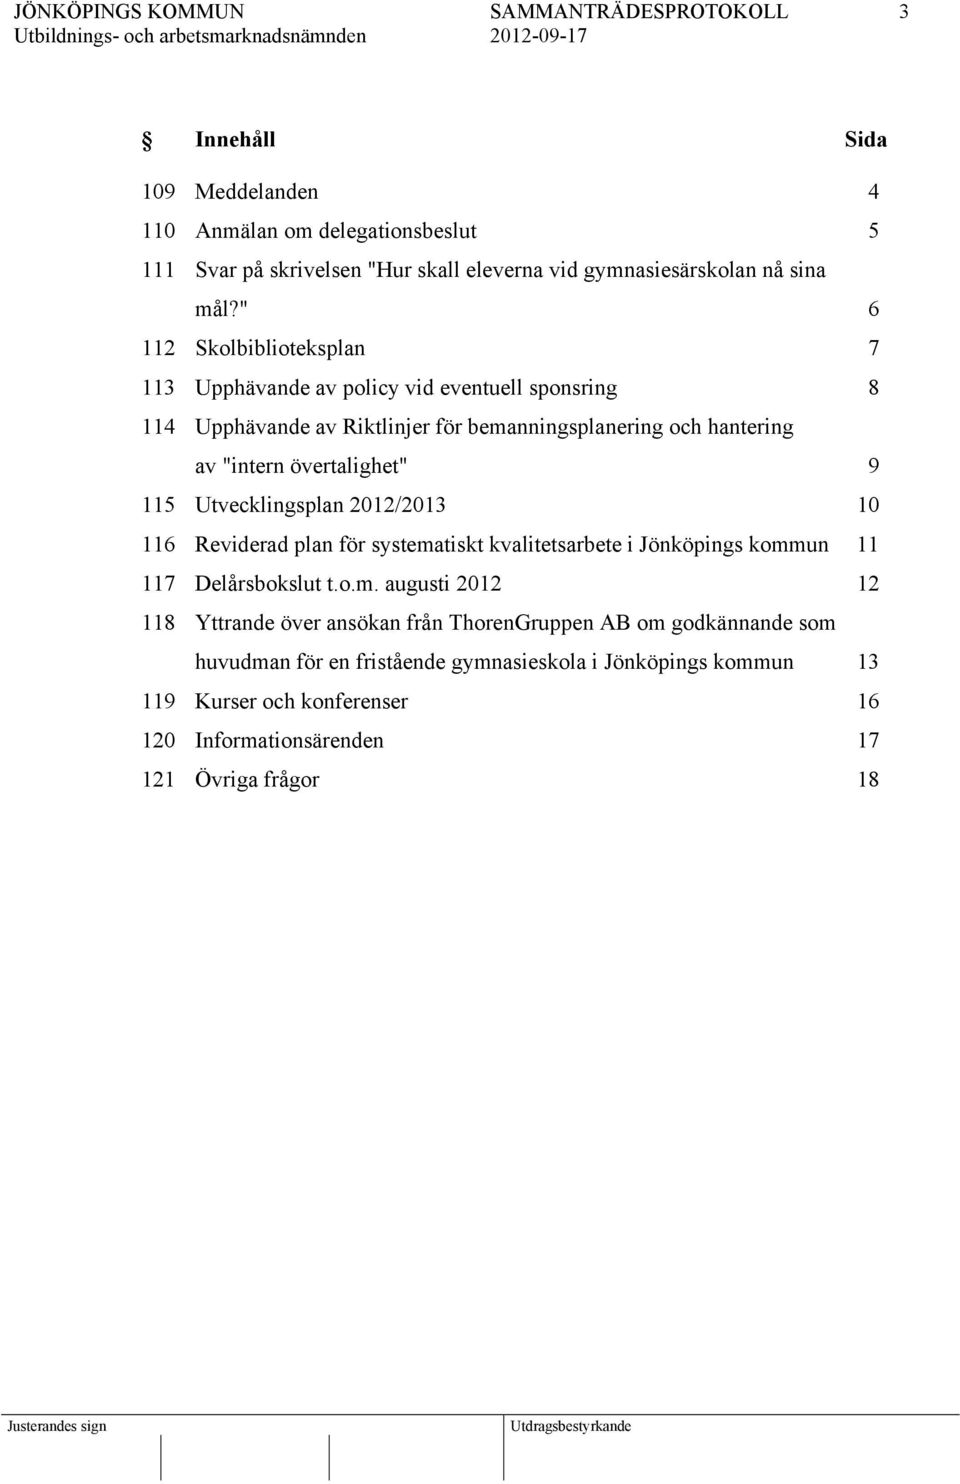 övertalighet" 9 115 Utvecklingsplan 2012/2013 10 116 Reviderad plan för systema